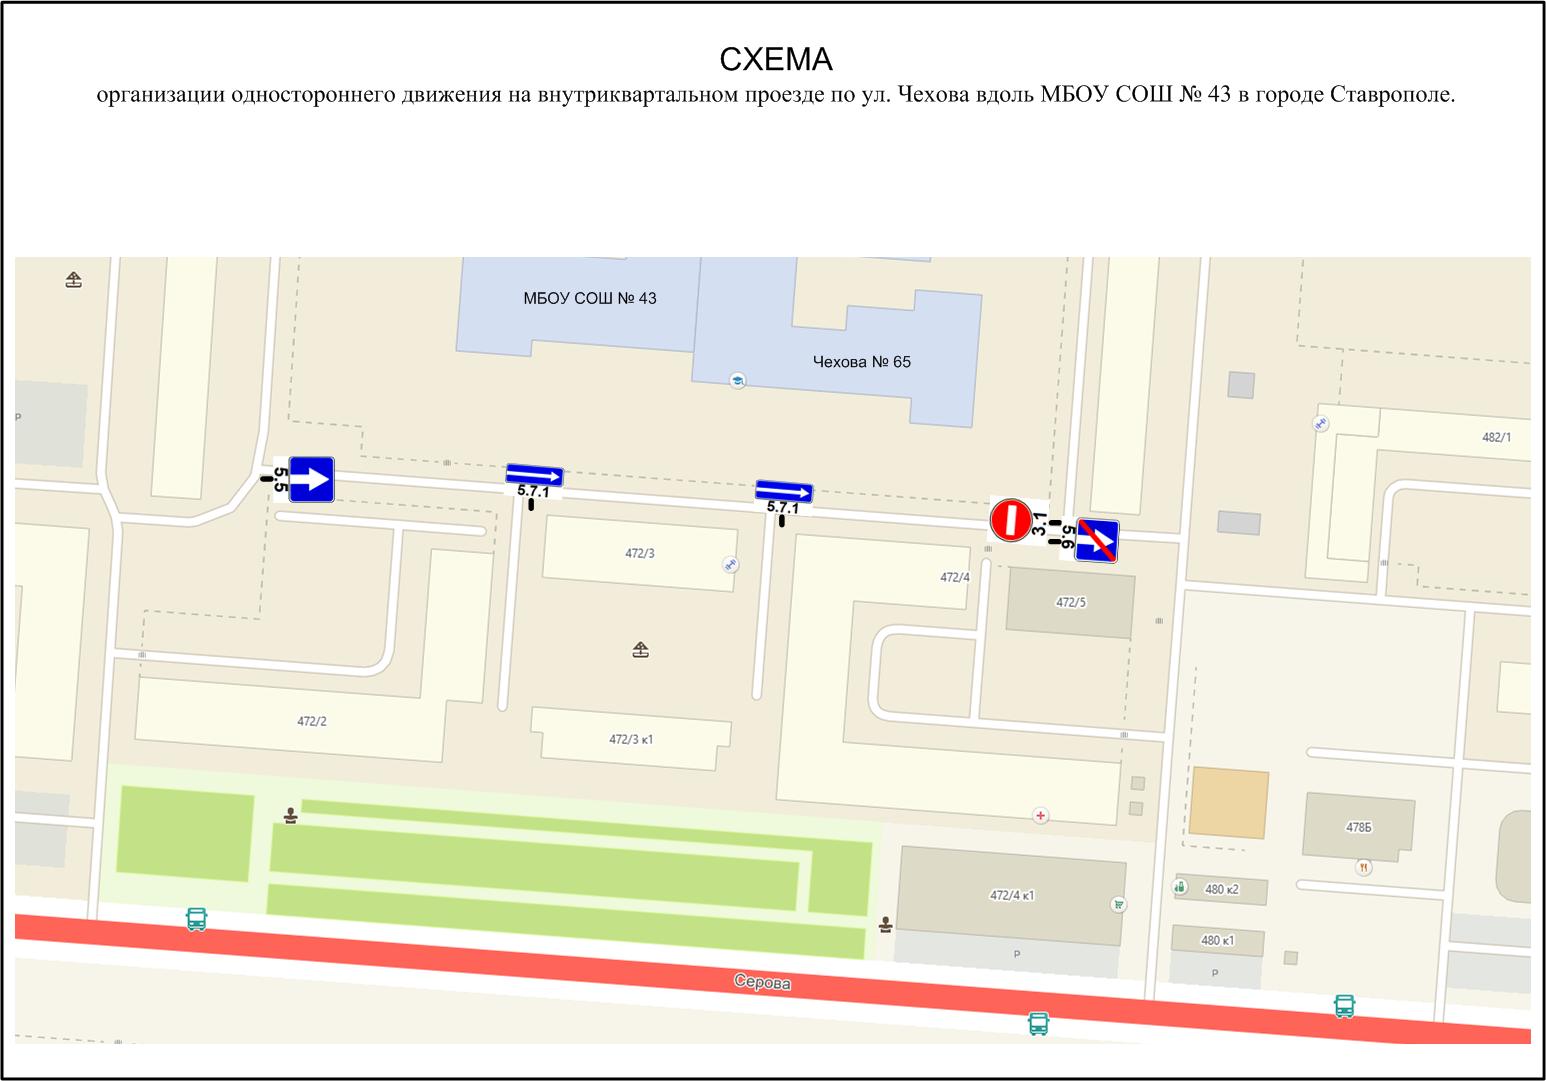 С целью организации безопасности дорожного движения и беспрепятственного проезда по внутриквартальной дороге вдоль МБОУ СОШ №43 г. Ставрополя с 15.06.2019 будет изменена схема движения на данном участке. 